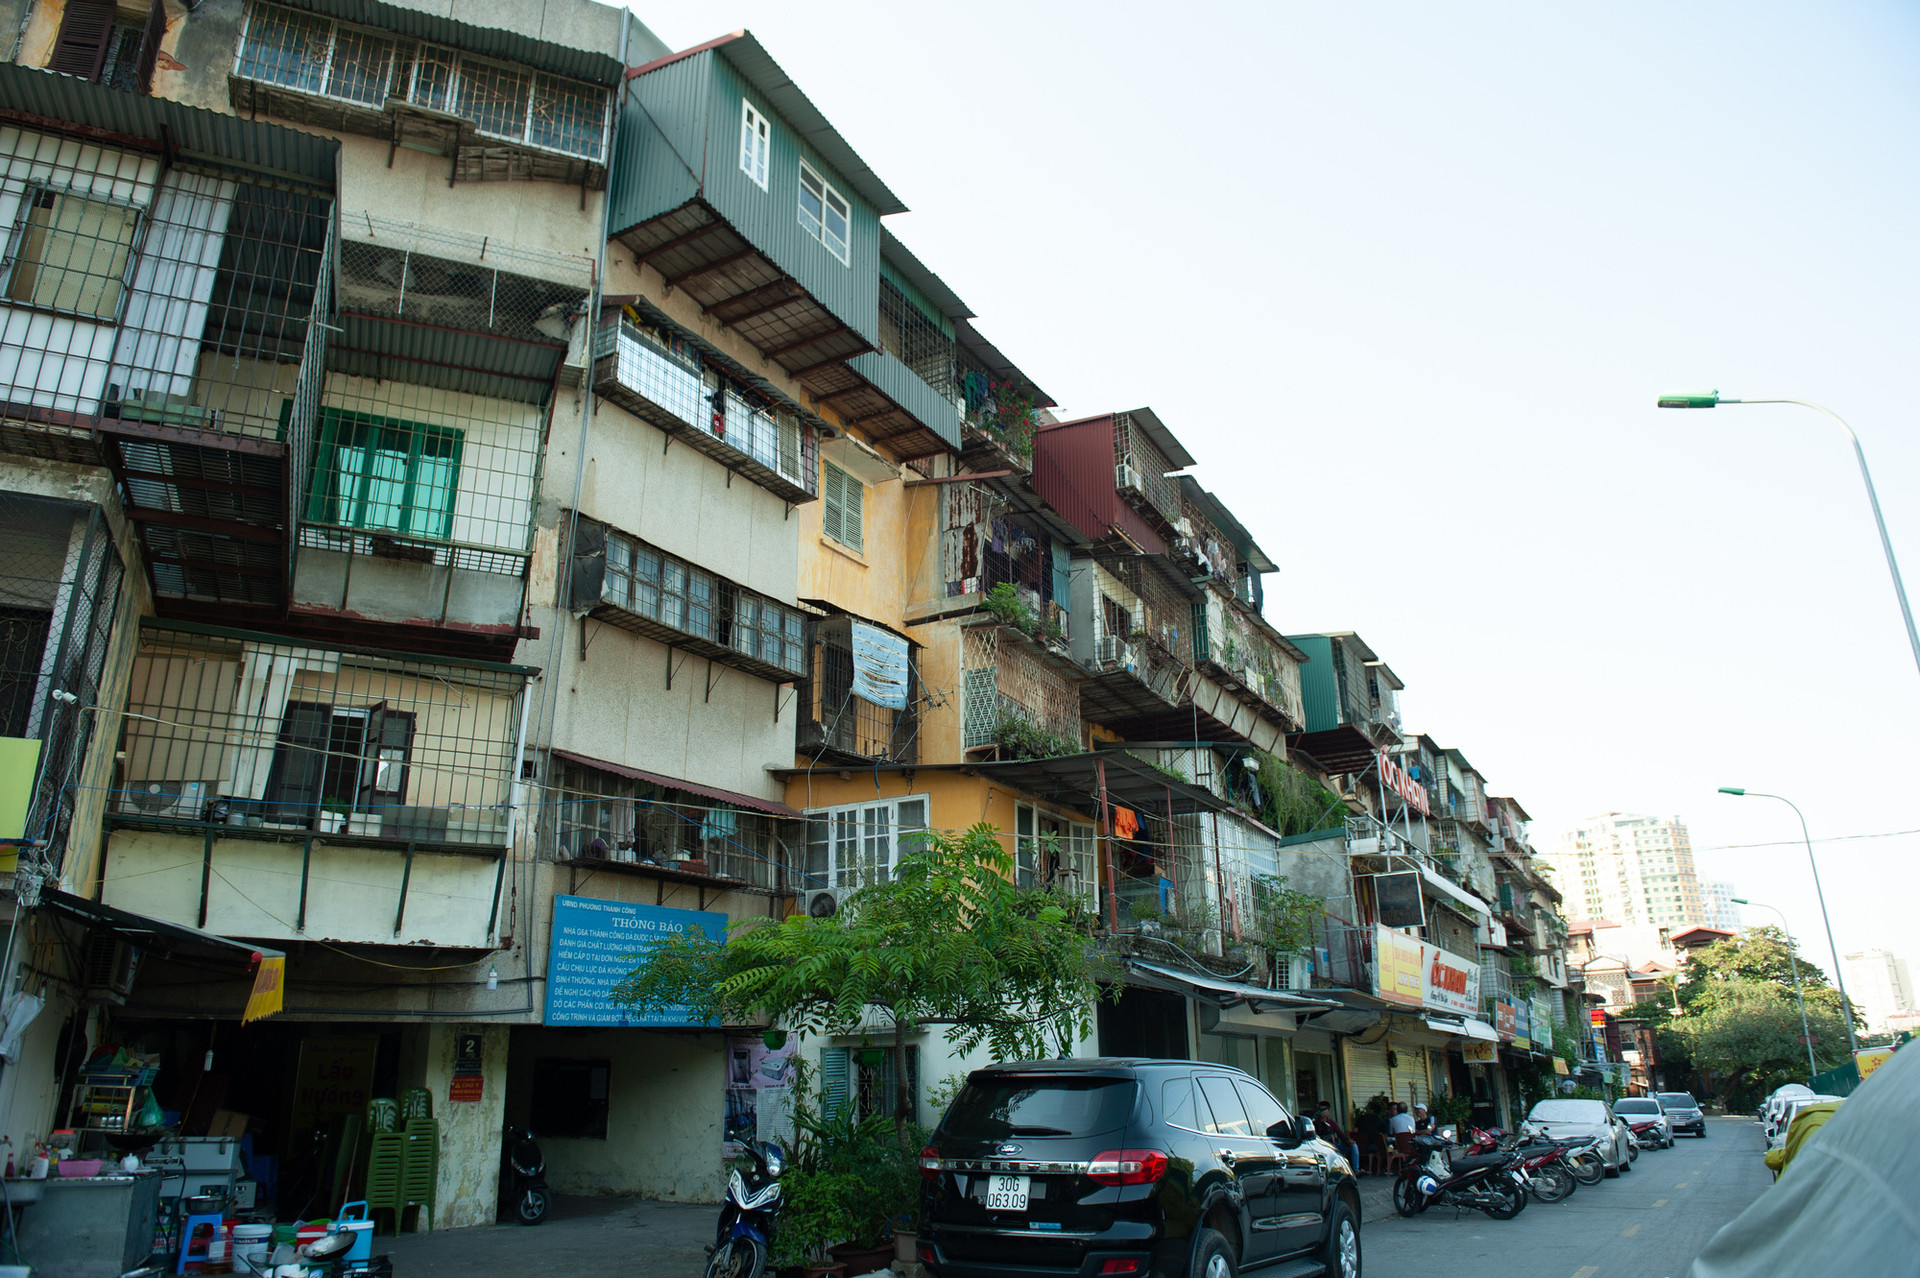 Hà Nội: Di dời hộ dân ra khỏi các nhà chung cư cũ nguy hiểm - Ảnh 1.